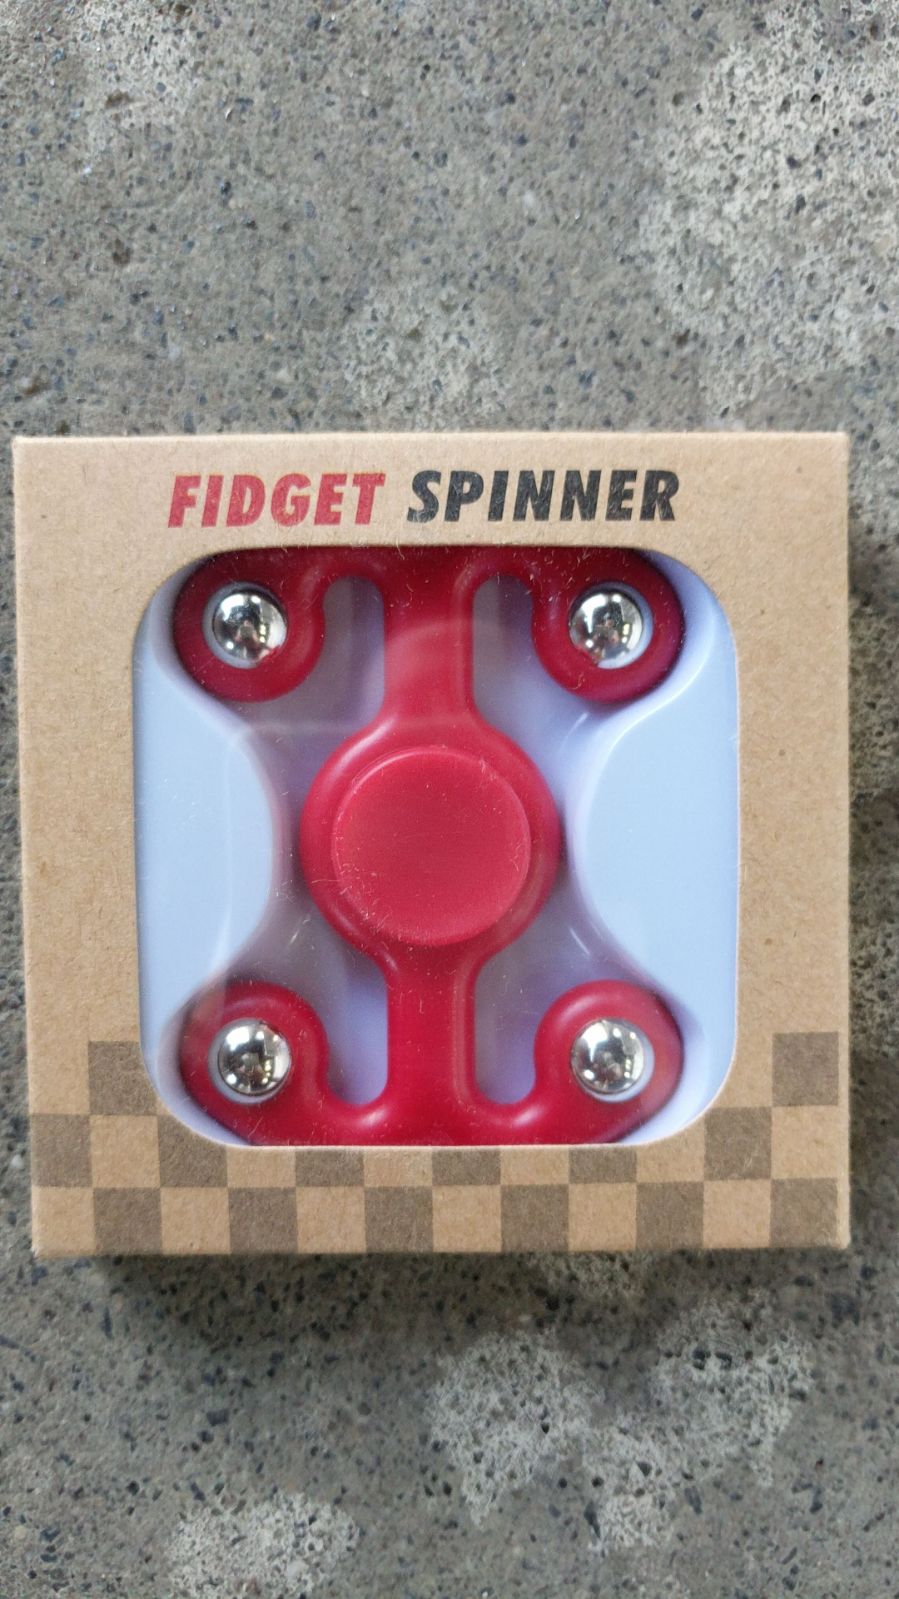 4 Sided Fidgit Fidget Spinner, Red